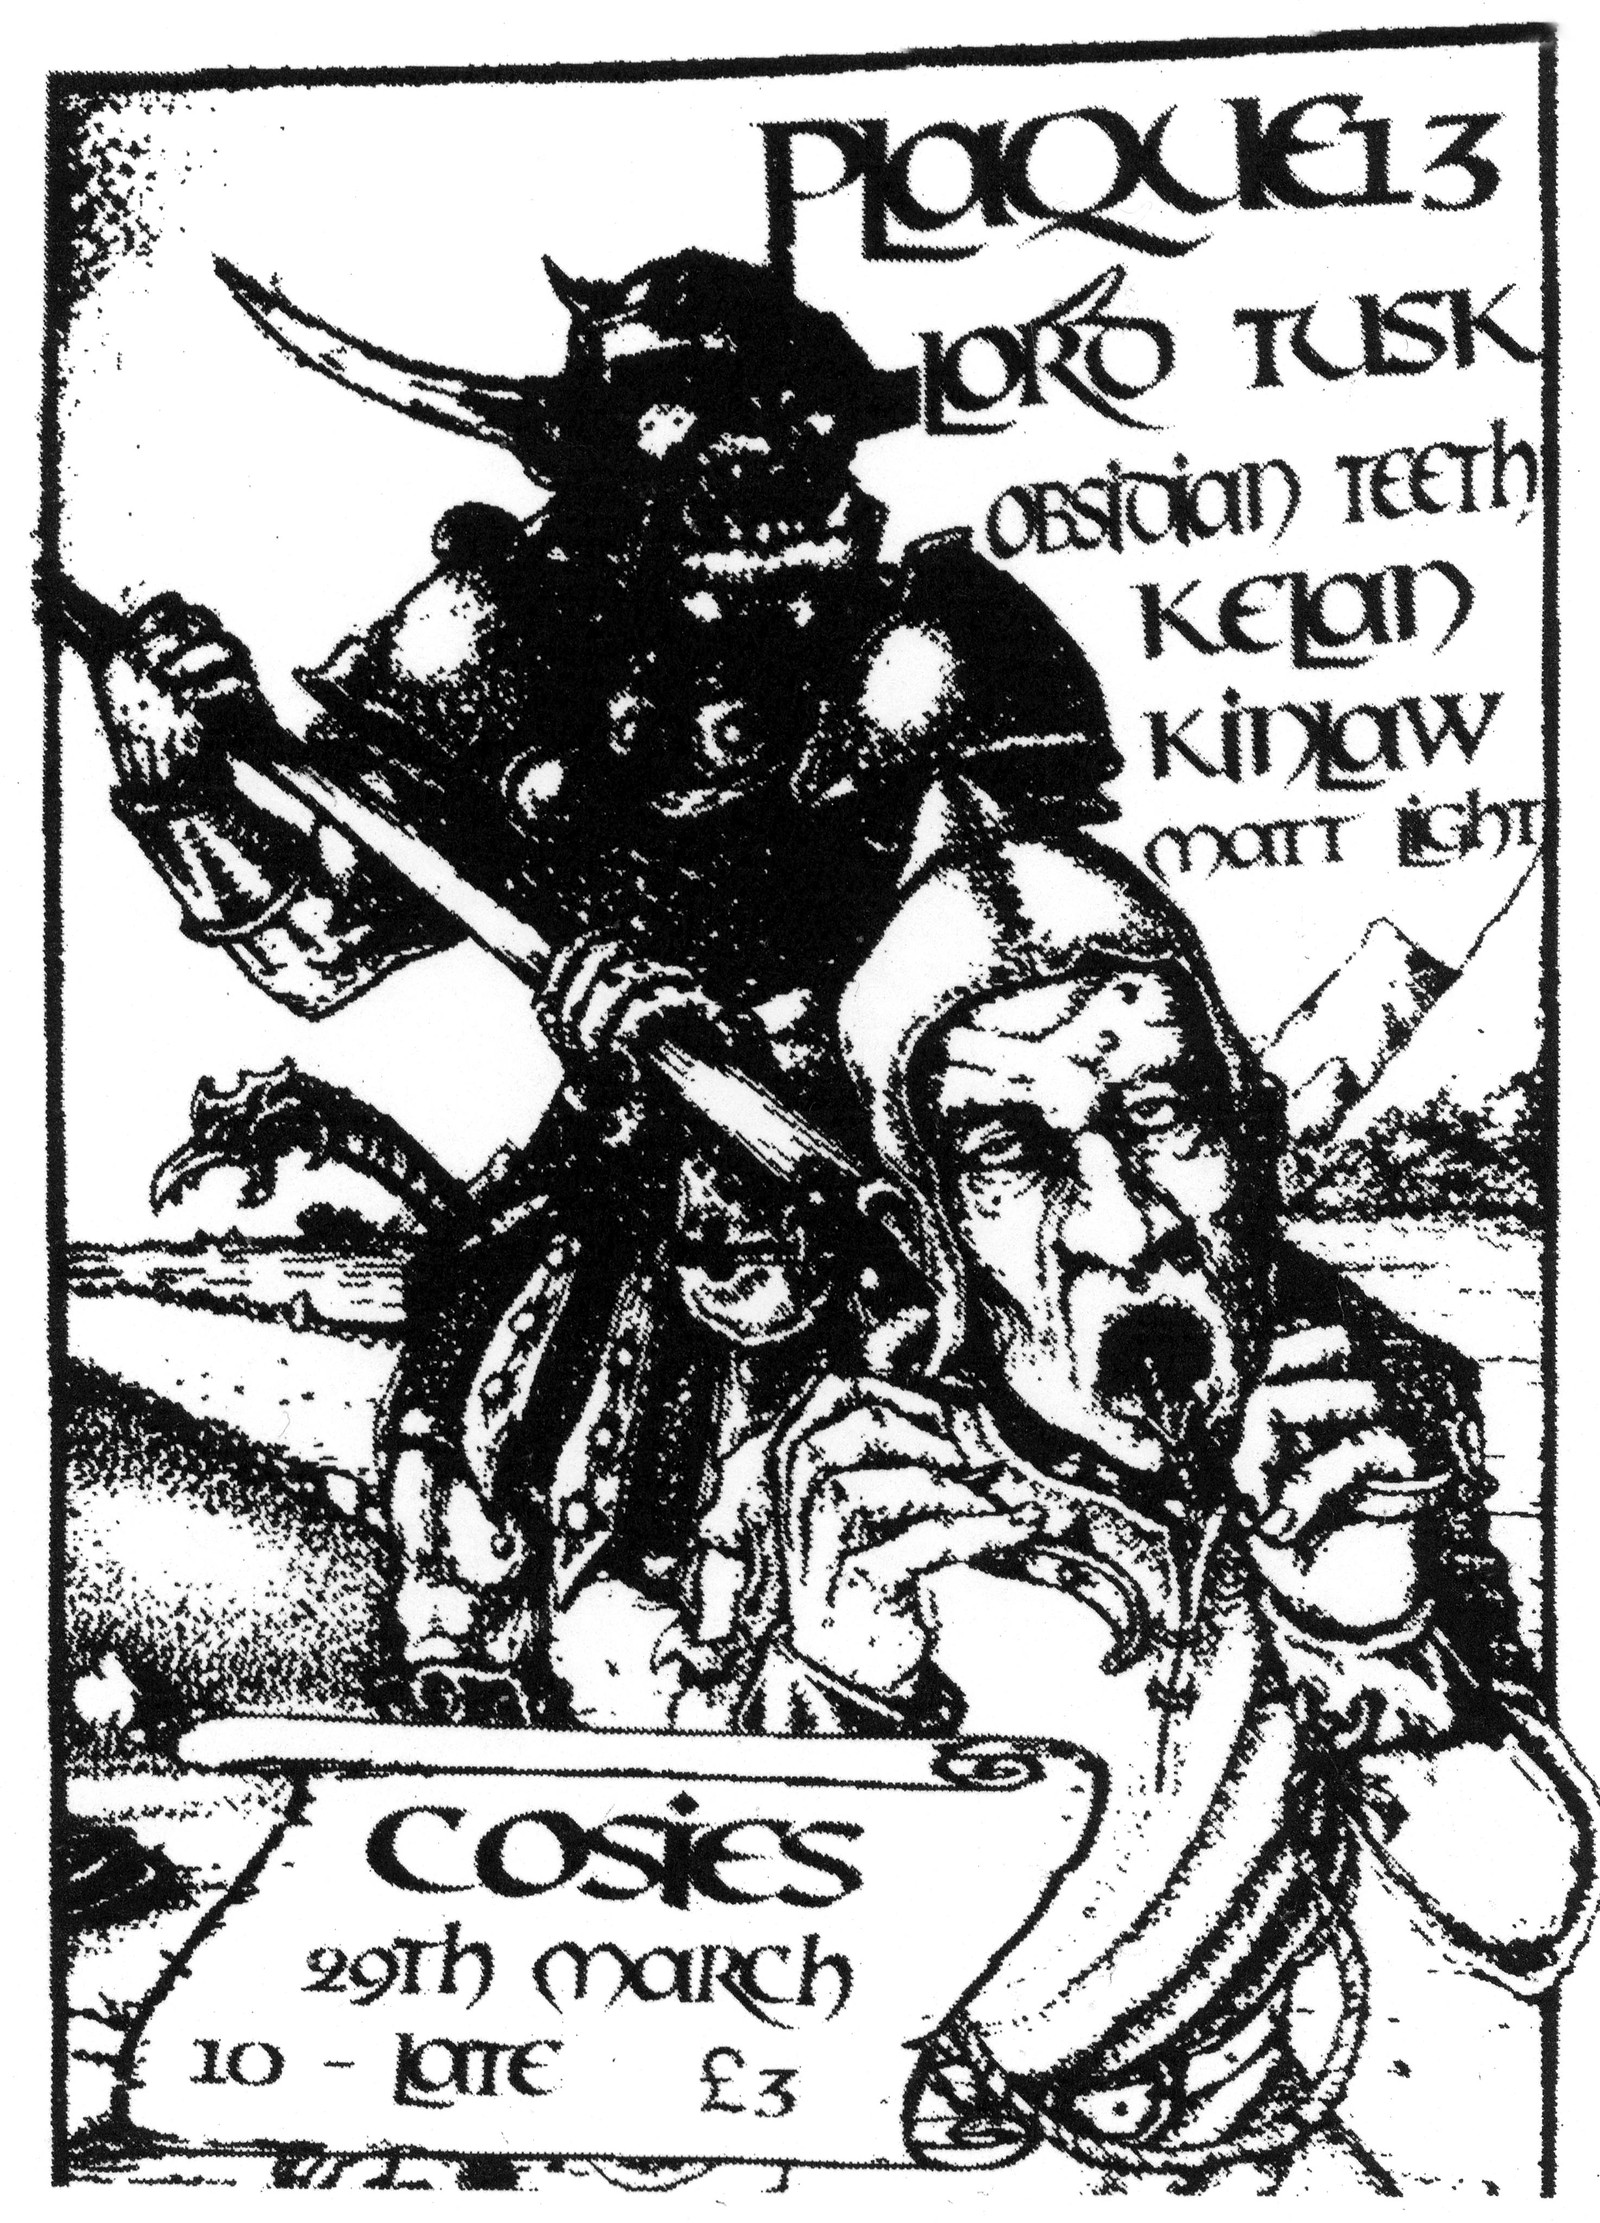 Plaque 13 - Lord Tusk/Obsidian Teeth/Kinlaw/Kelan at Cosies